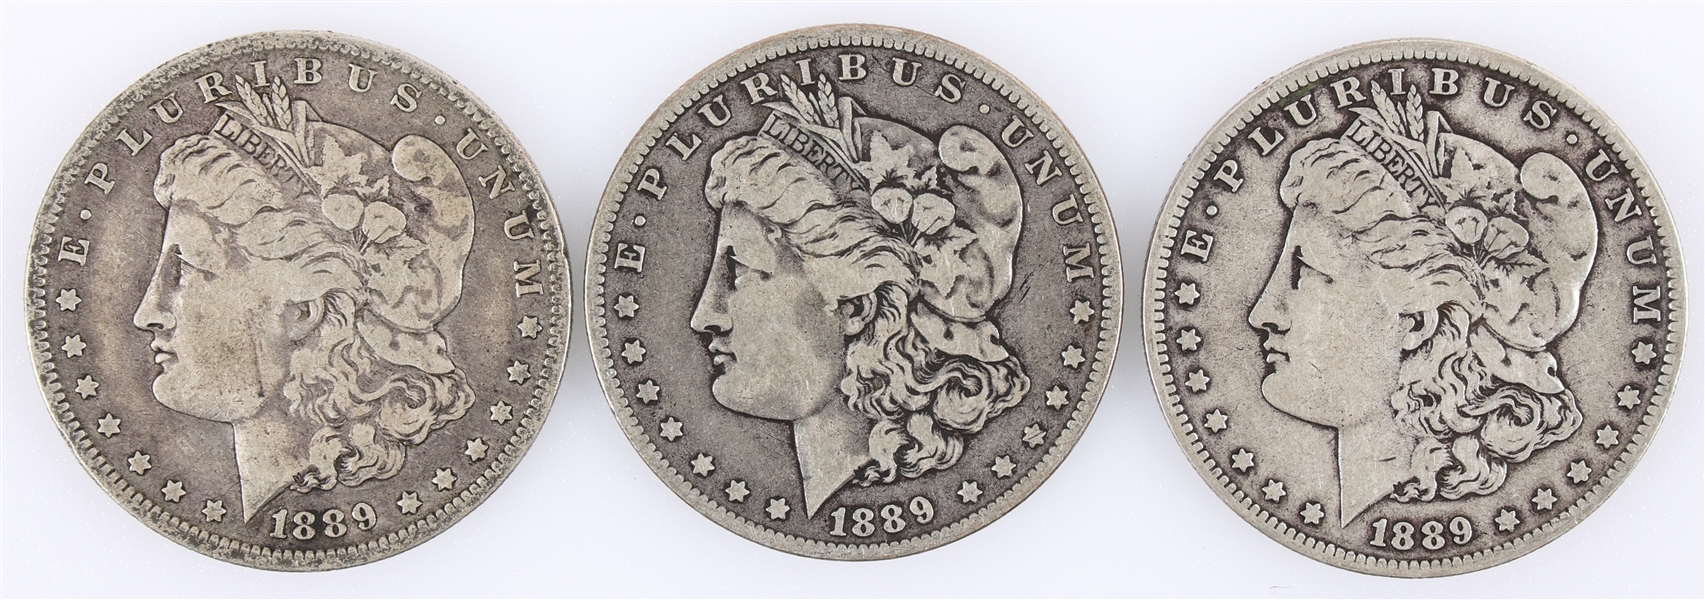 1889-O US MORGAN SILVER DOLLAR COINS - LOT OF 3